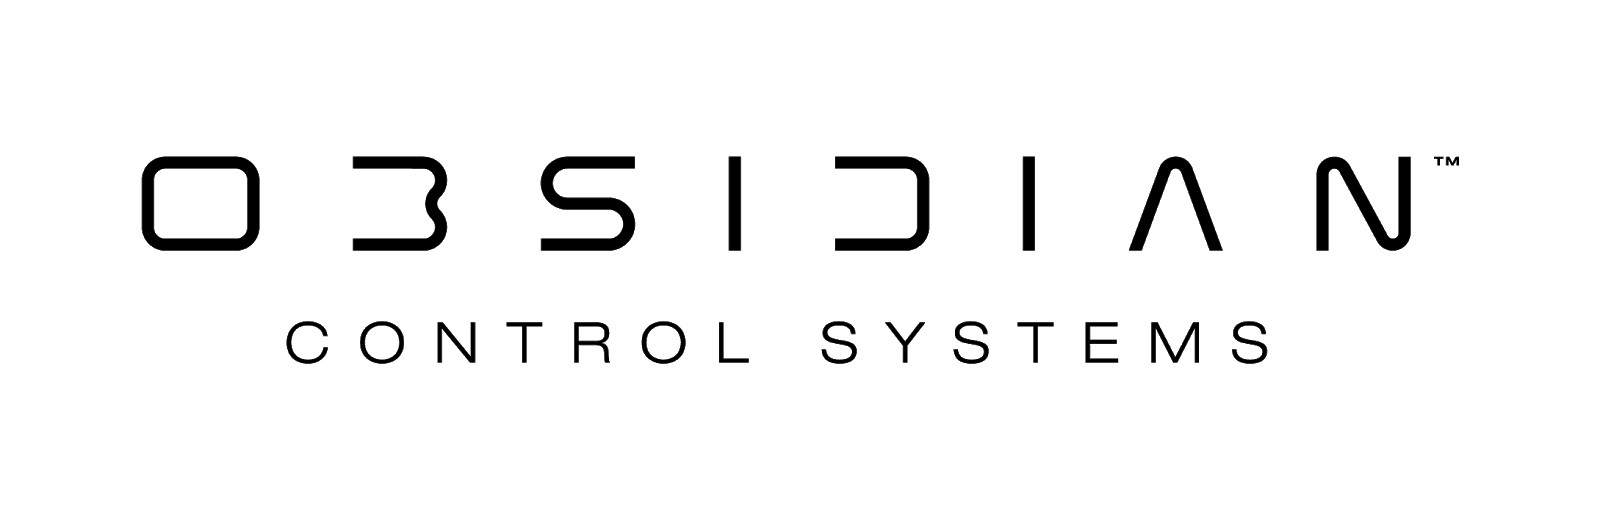 Obsidian Control Systems_logo.jpg